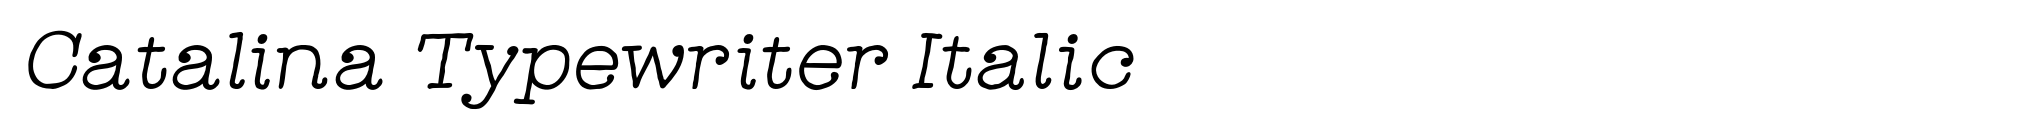 Catalina Typewriter Italic image